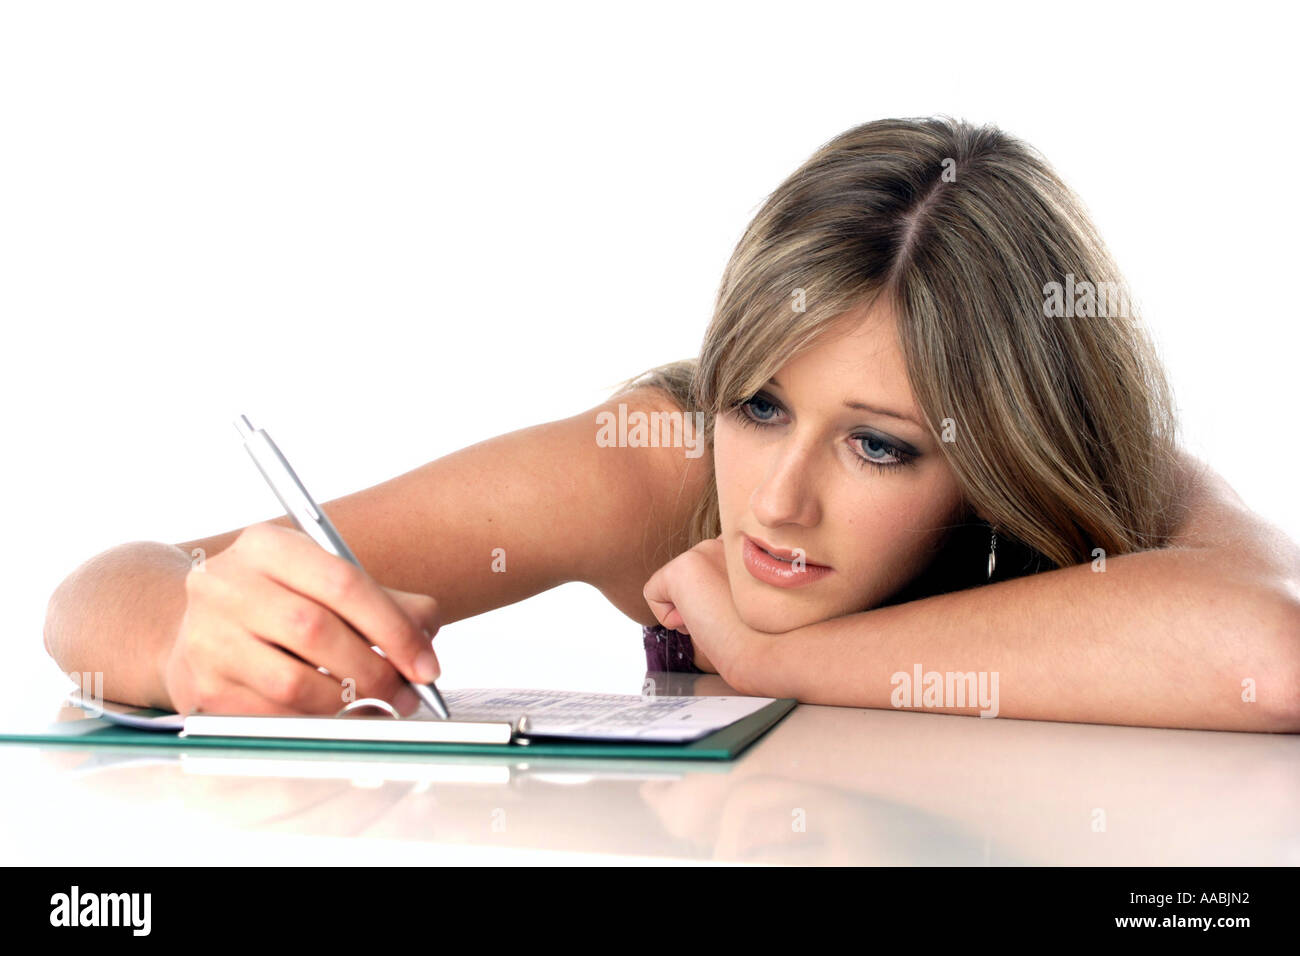 Woman writes Stock Photo